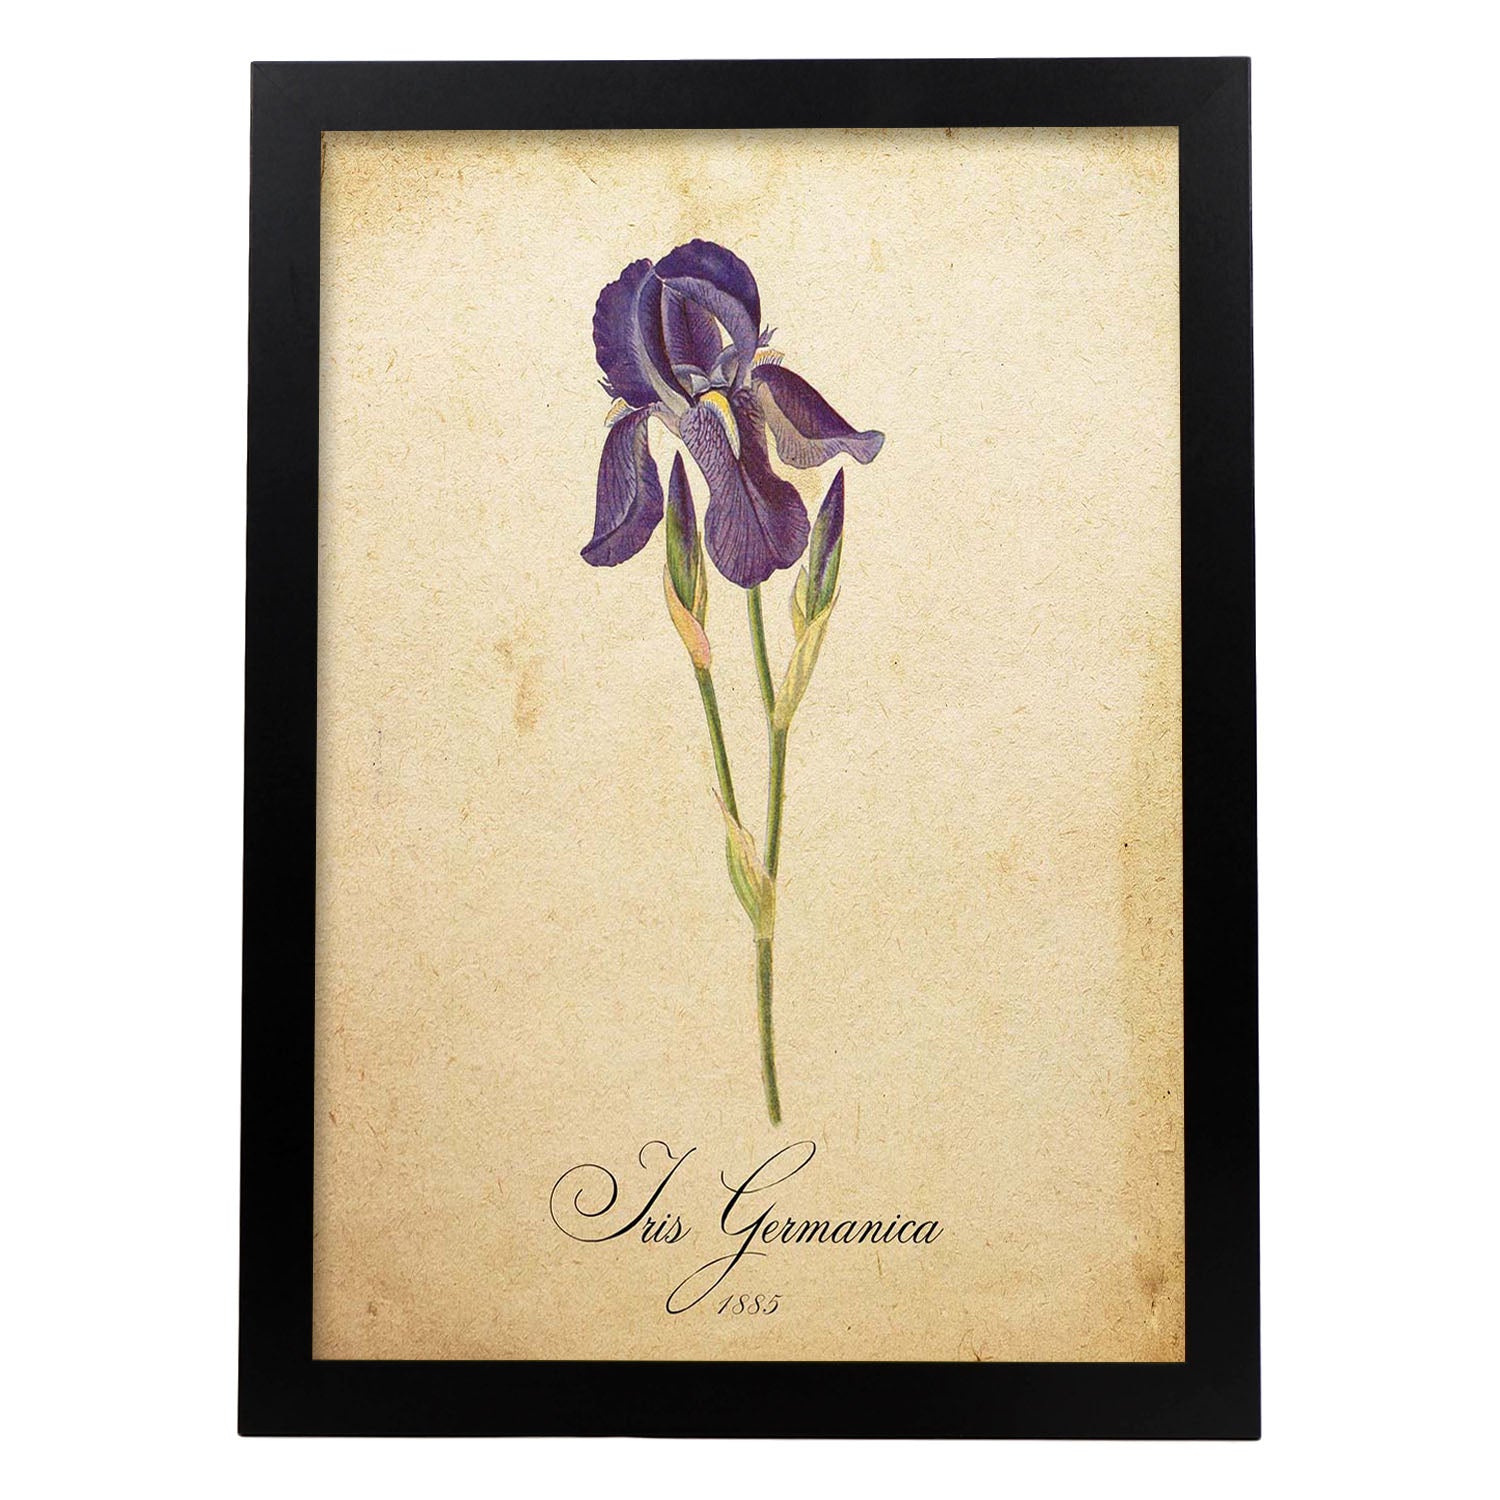 Poster de flores vintage. Lámina Iris germanica con diseño vintage.-Artwork-Nacnic-A4-Marco Negro-Nacnic Estudio SL